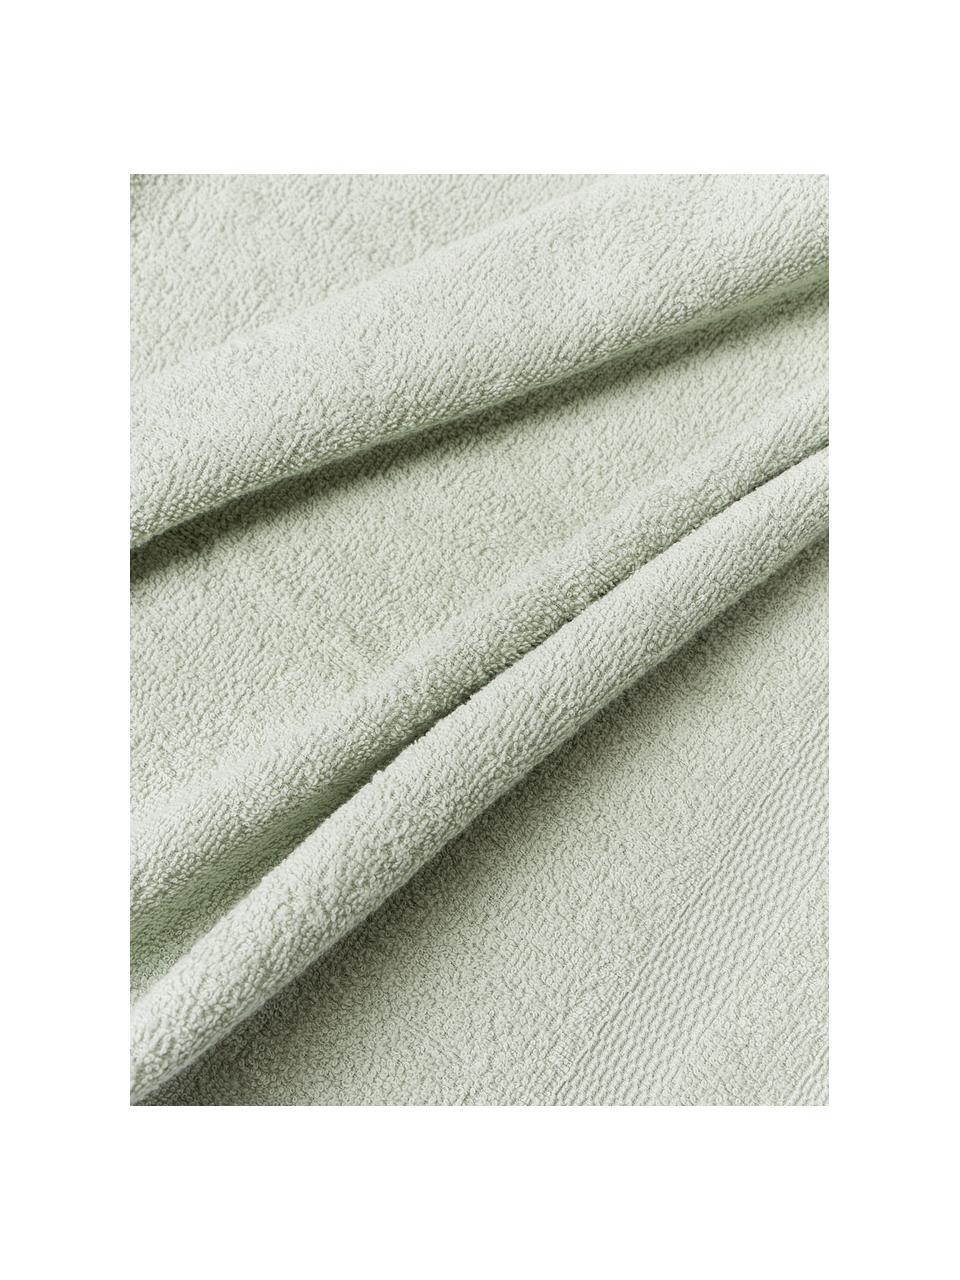 Bavlnené uteráky Camila, 4 ks, Šalviová zelená, Š 30 x D 50 cm